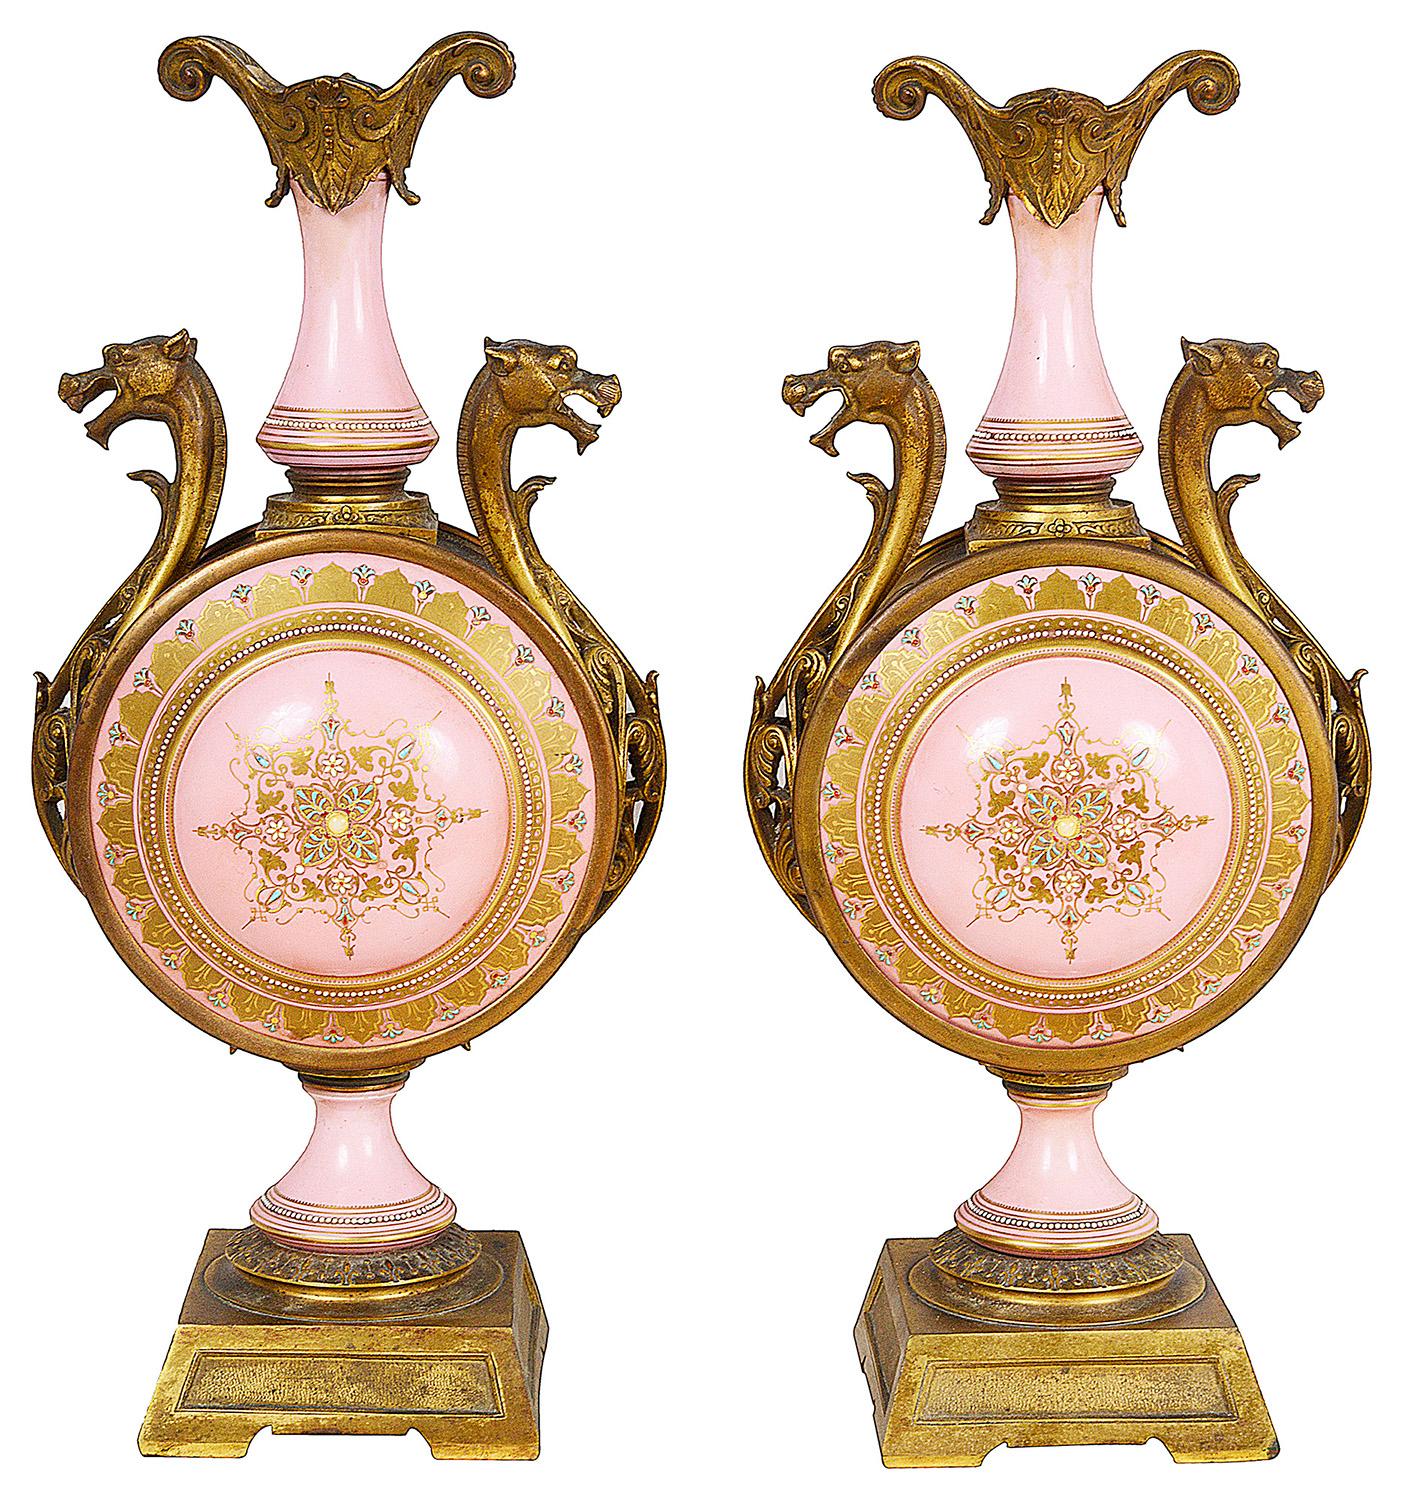 Ein sehr dekoratives Paar rosa Porzellanvasen mit zwei Henkeln im französischen Sèvres-Stil des 19. Jahrhunderts, jeweils mit vergoldeten Ormolu-Fassungen und handgemalten Szenen von liegenden Jungfrauen mit spielenden Putten.